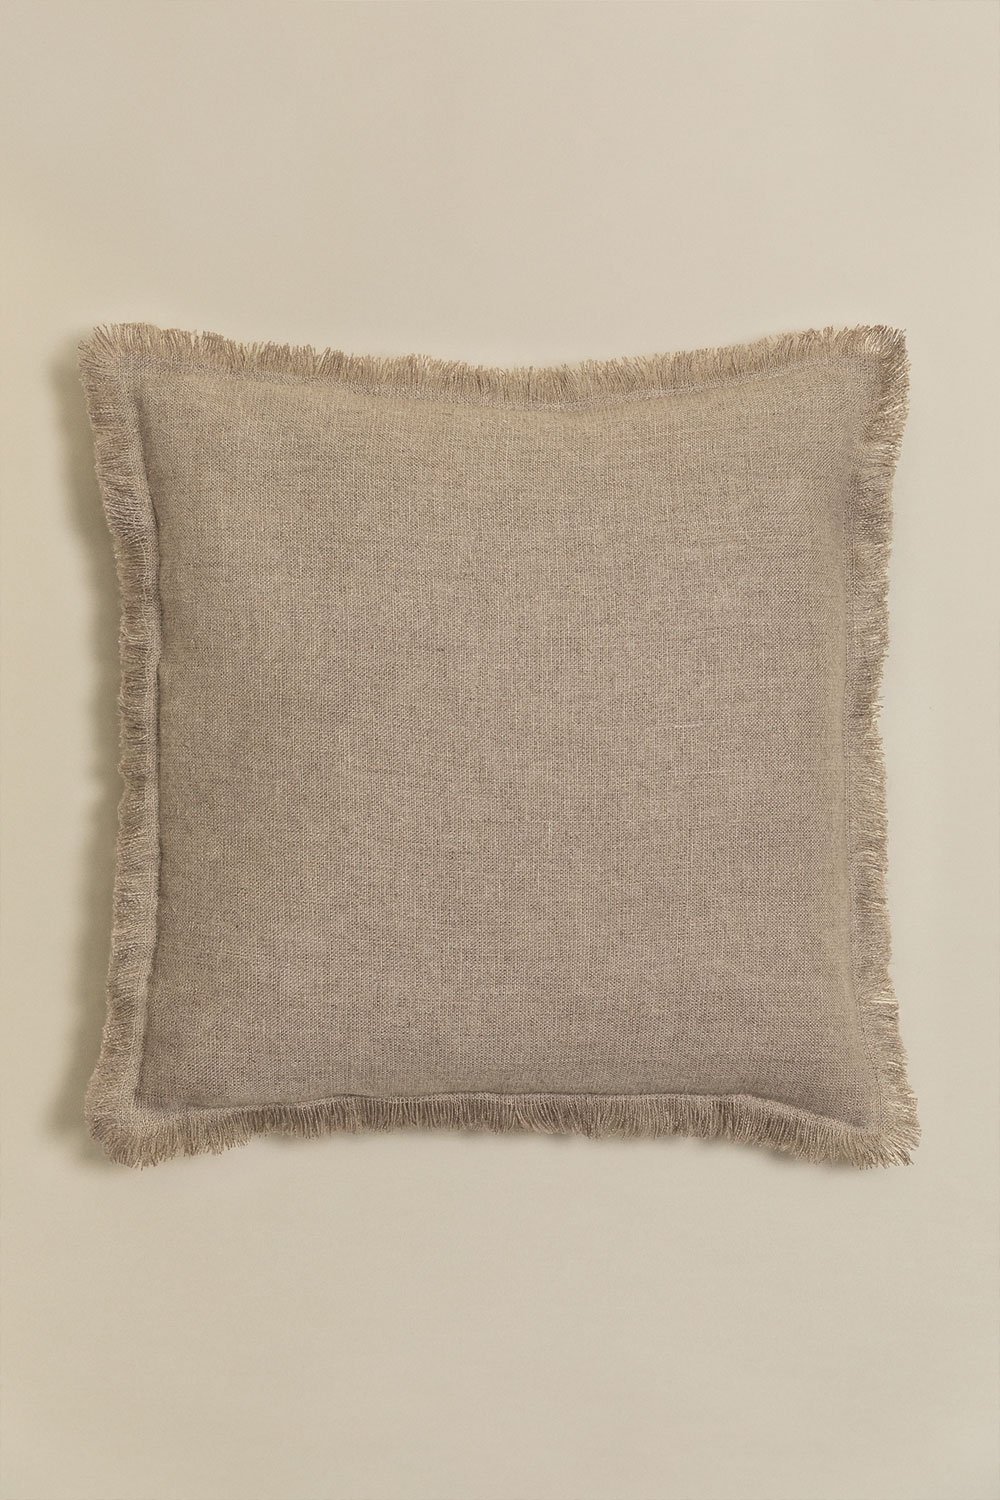 Cuscino quadrato in cotone e lino (45x45 cm) Glenfern, immagine della galleria 1